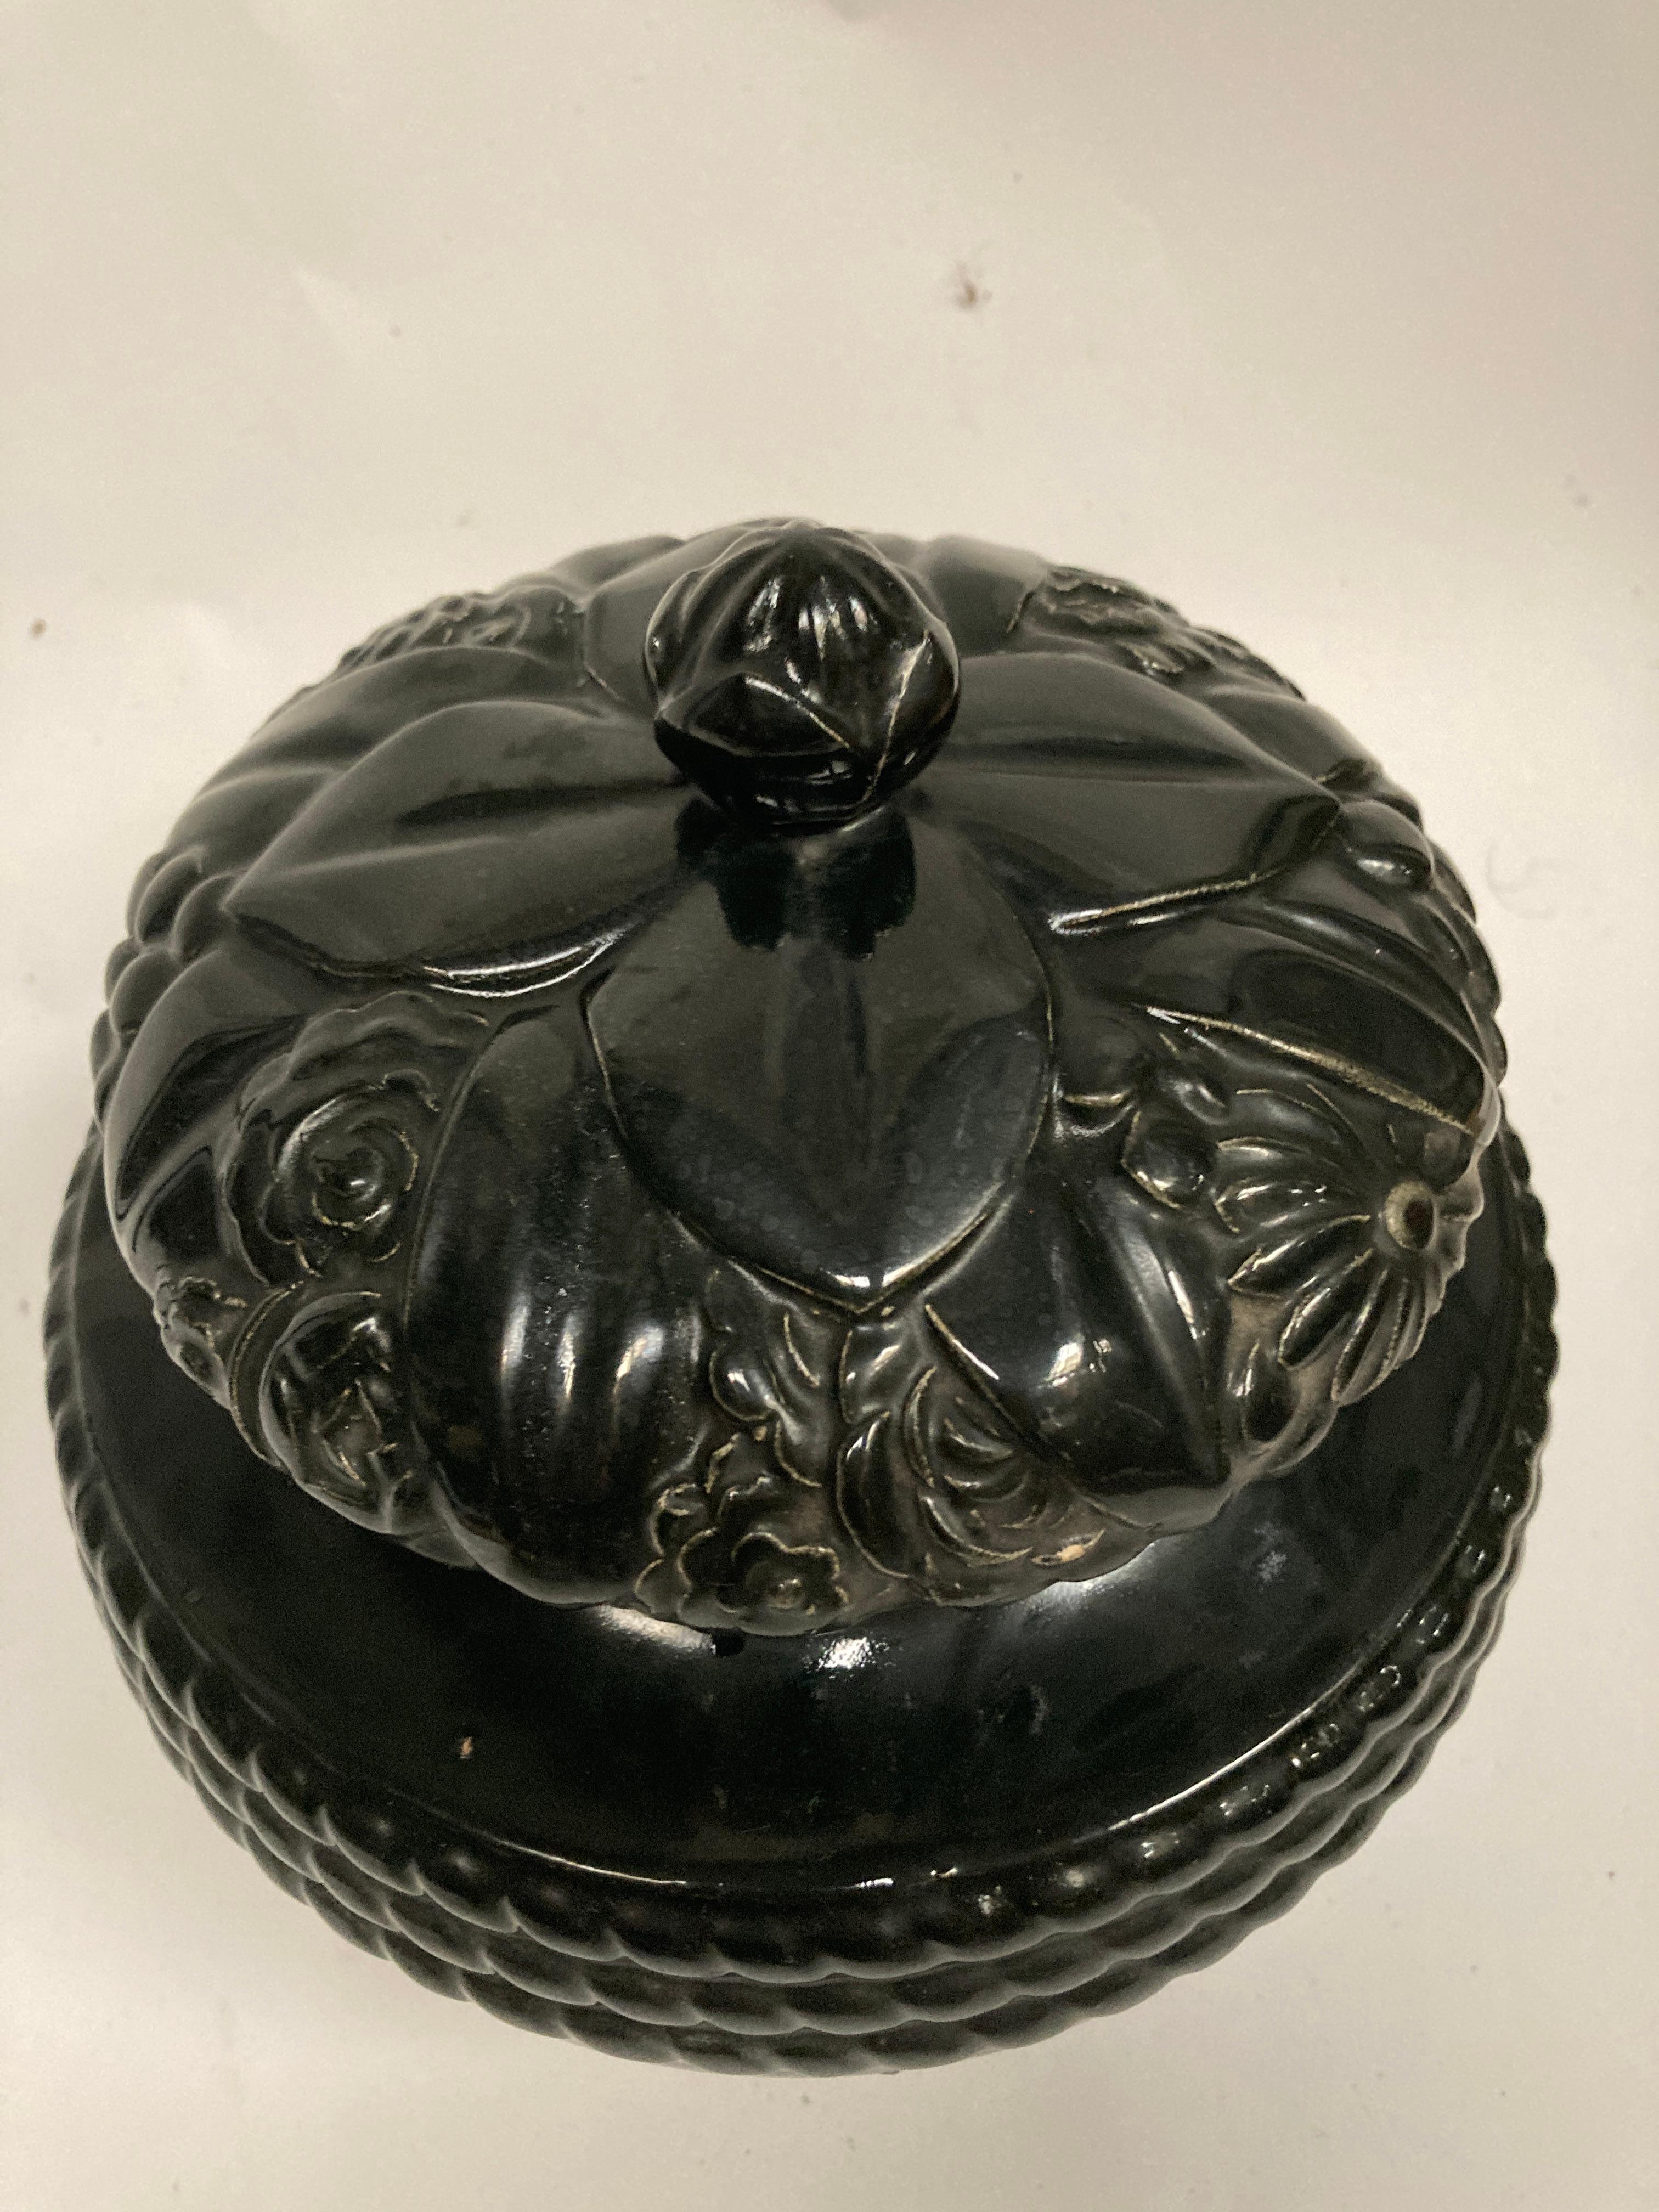 Rare urne ou vase en céramique conçu vers 1925 par les artistes français Louis Sue et André Mare. 
Documenté